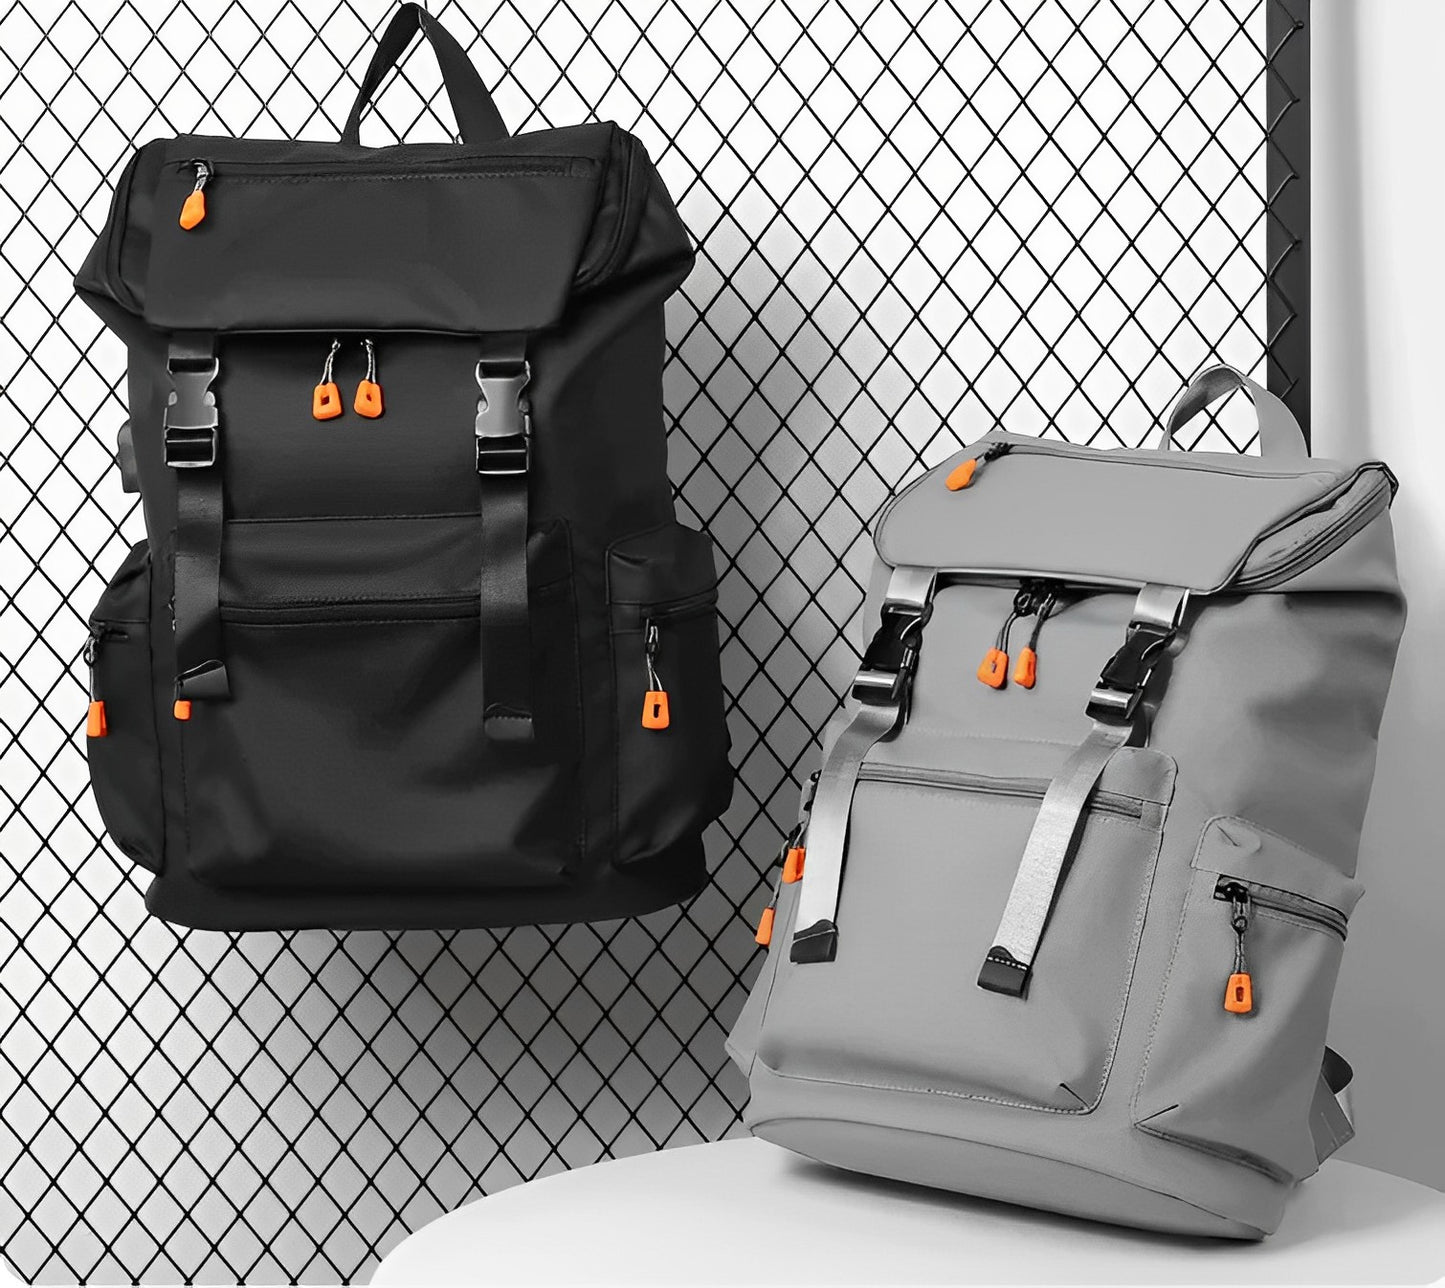 Bagzy AeroPack Pro: A Functional Backpack - BagzyBag